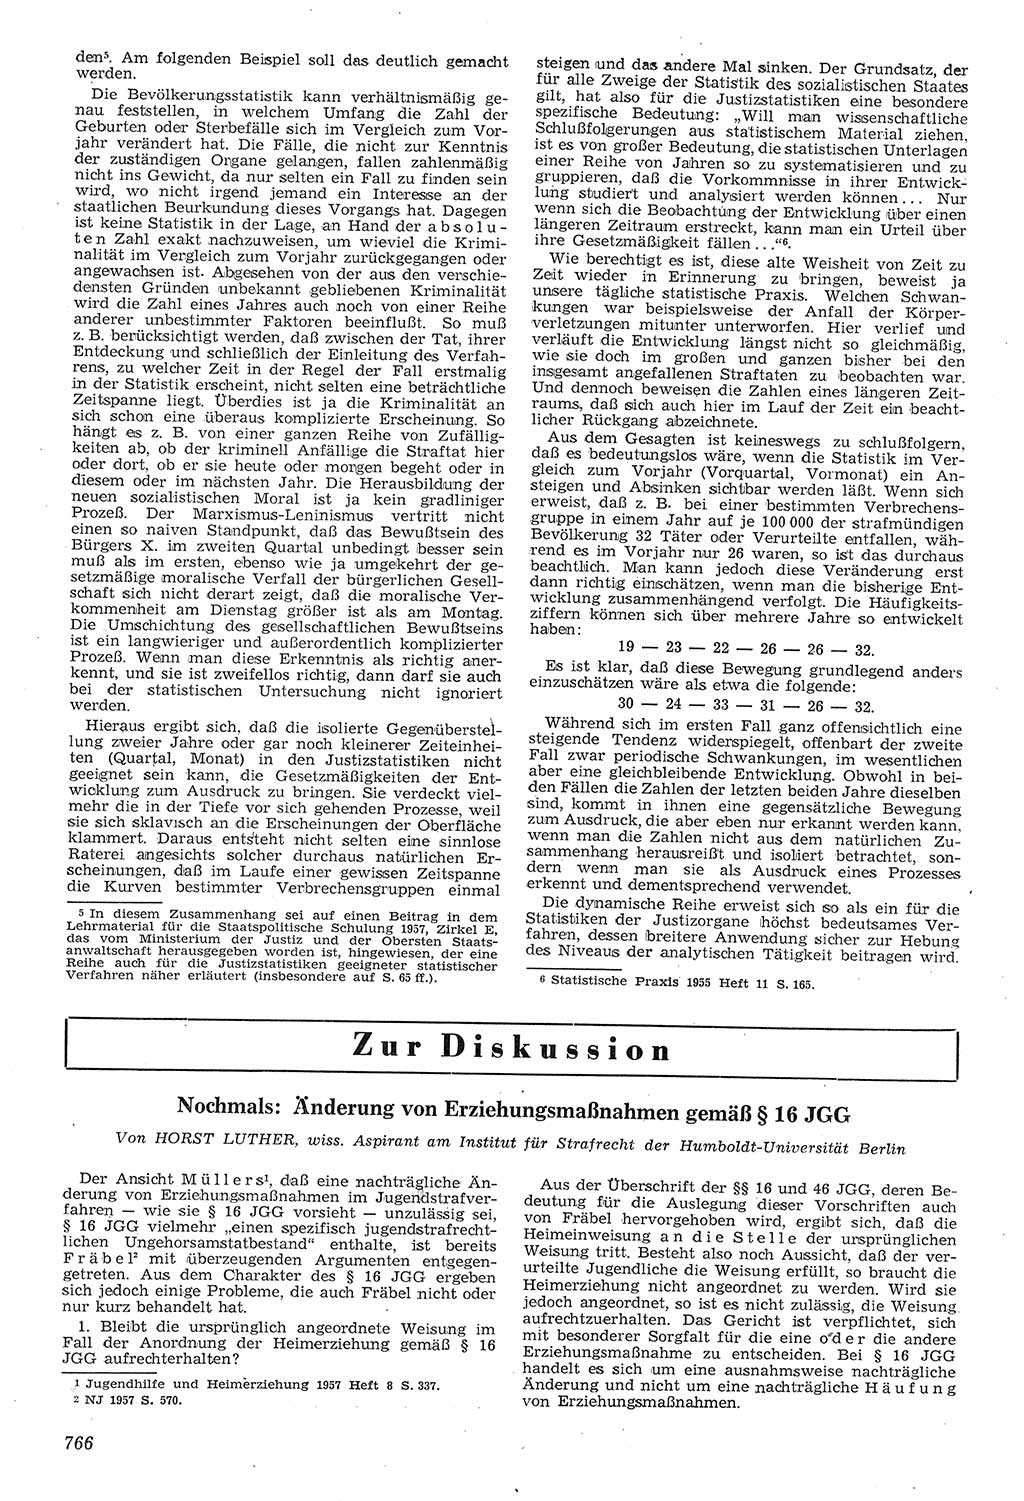 Neue Justiz (NJ), Zeitschrift für Recht und Rechtswissenschaft [Deutsche Demokratische Republik (DDR)], 11. Jahrgang 1957, Seite 766 (NJ DDR 1957, S. 766)